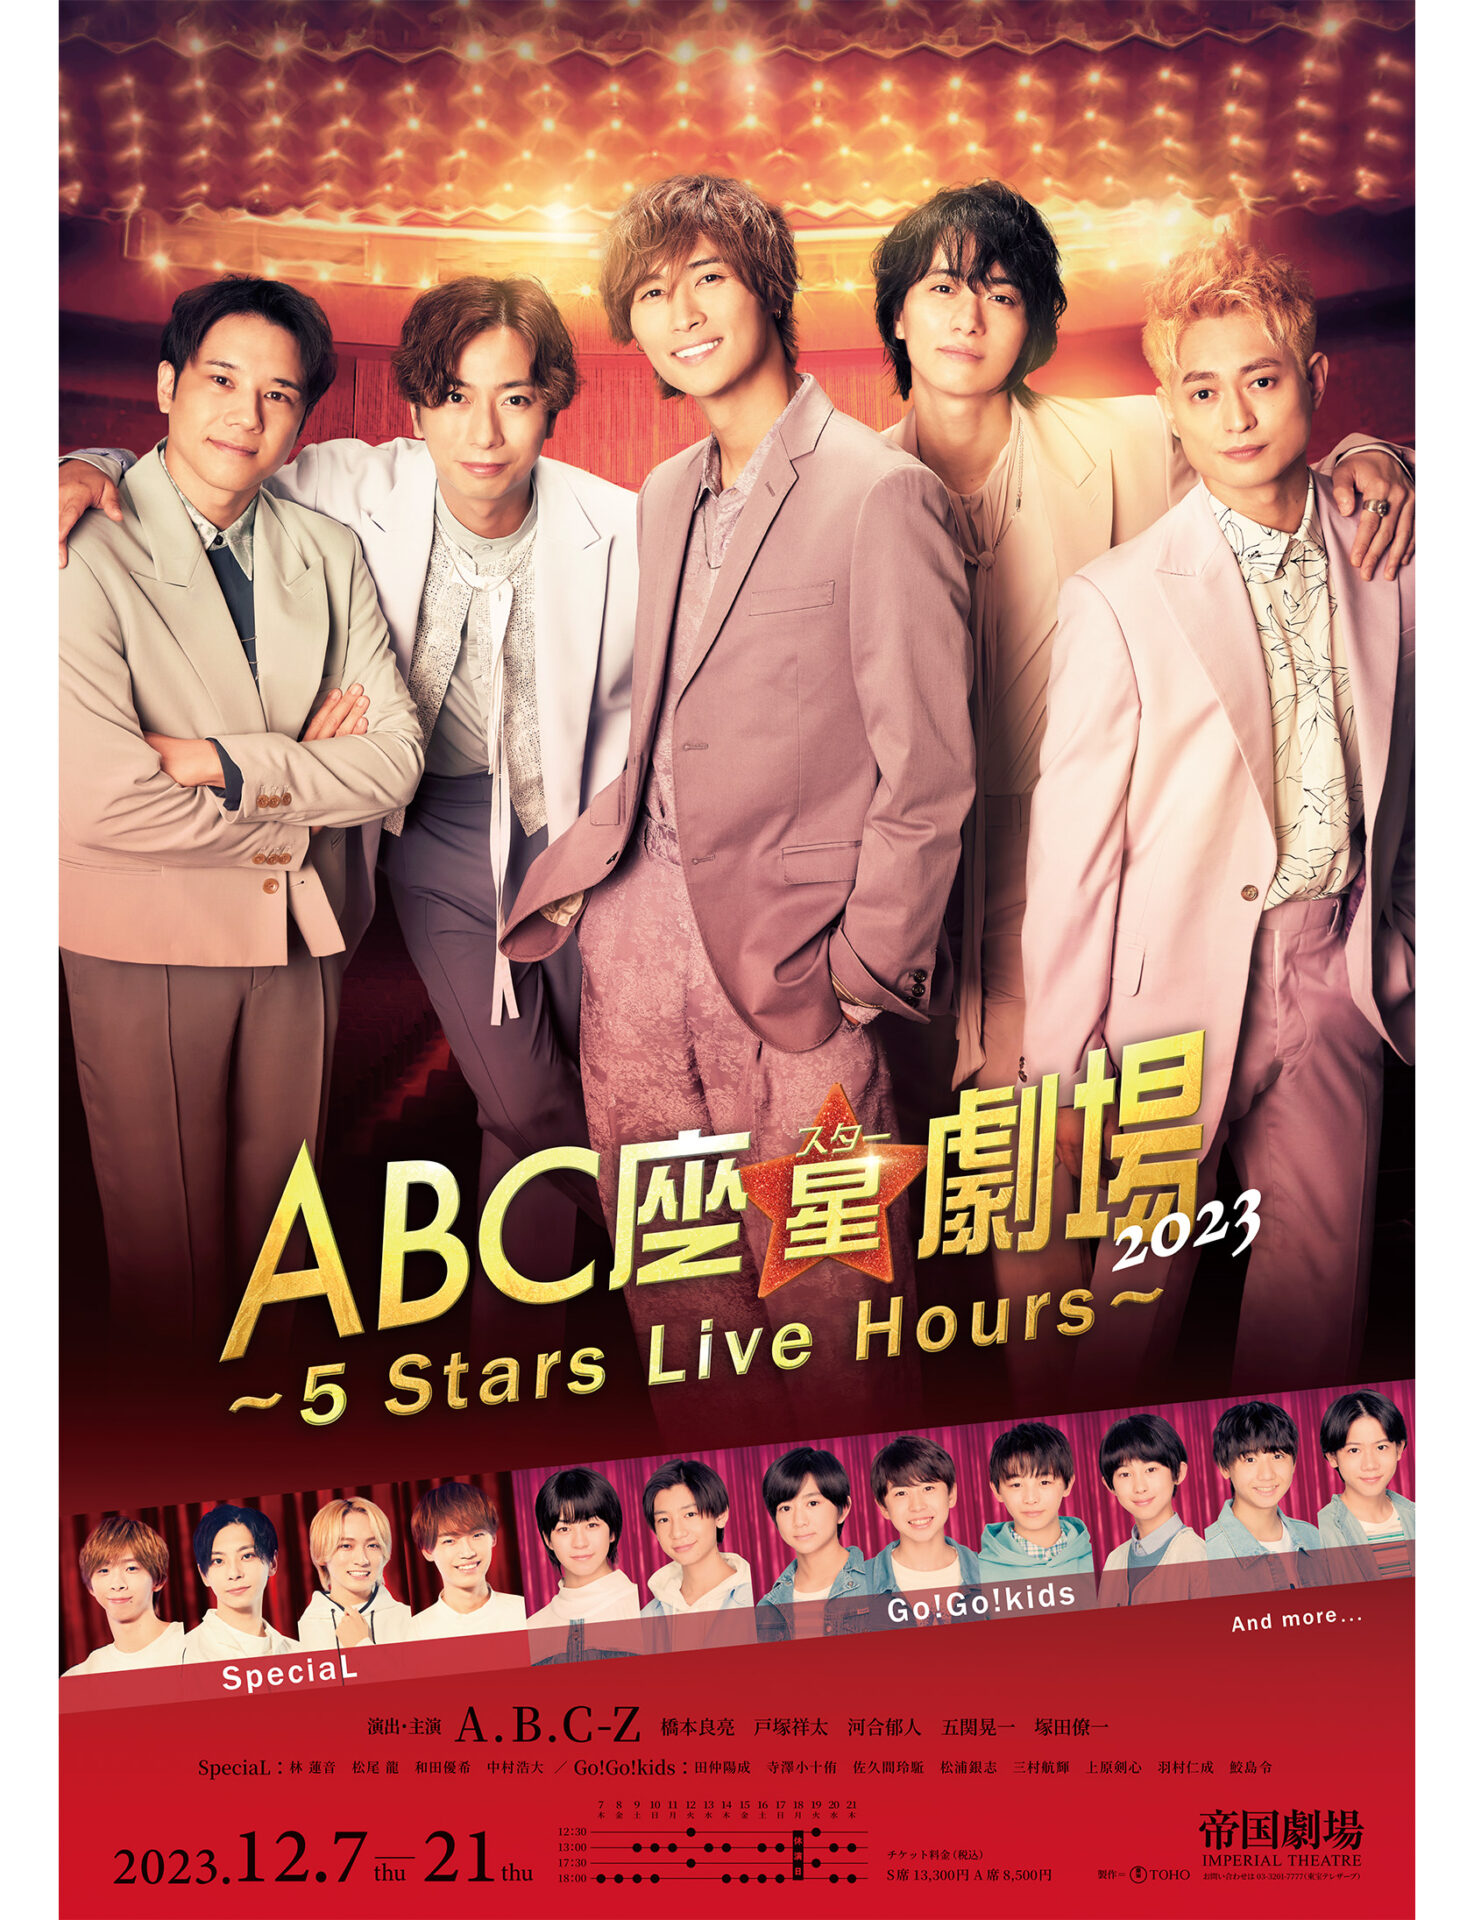 A.B.C-Z ABC座 星(スター)劇場 初回限定盤 DVD 最安挑戦！ - ミュージック